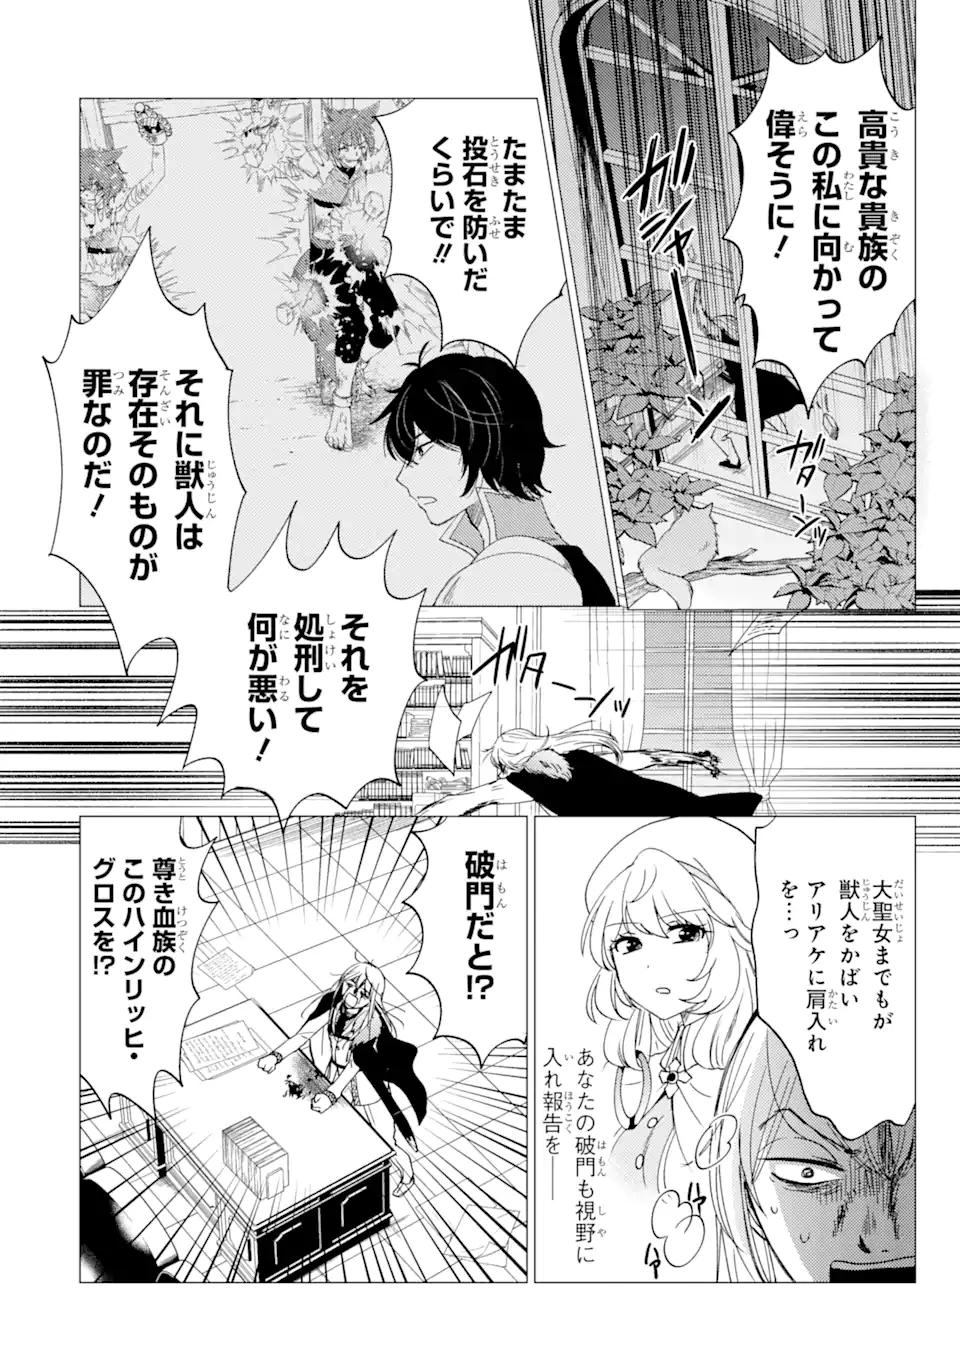 Yuusha Party wo Tsuihou Sareta Ore da ga, Ore kara Sudatte Kureta you de  Ureshii. Manga